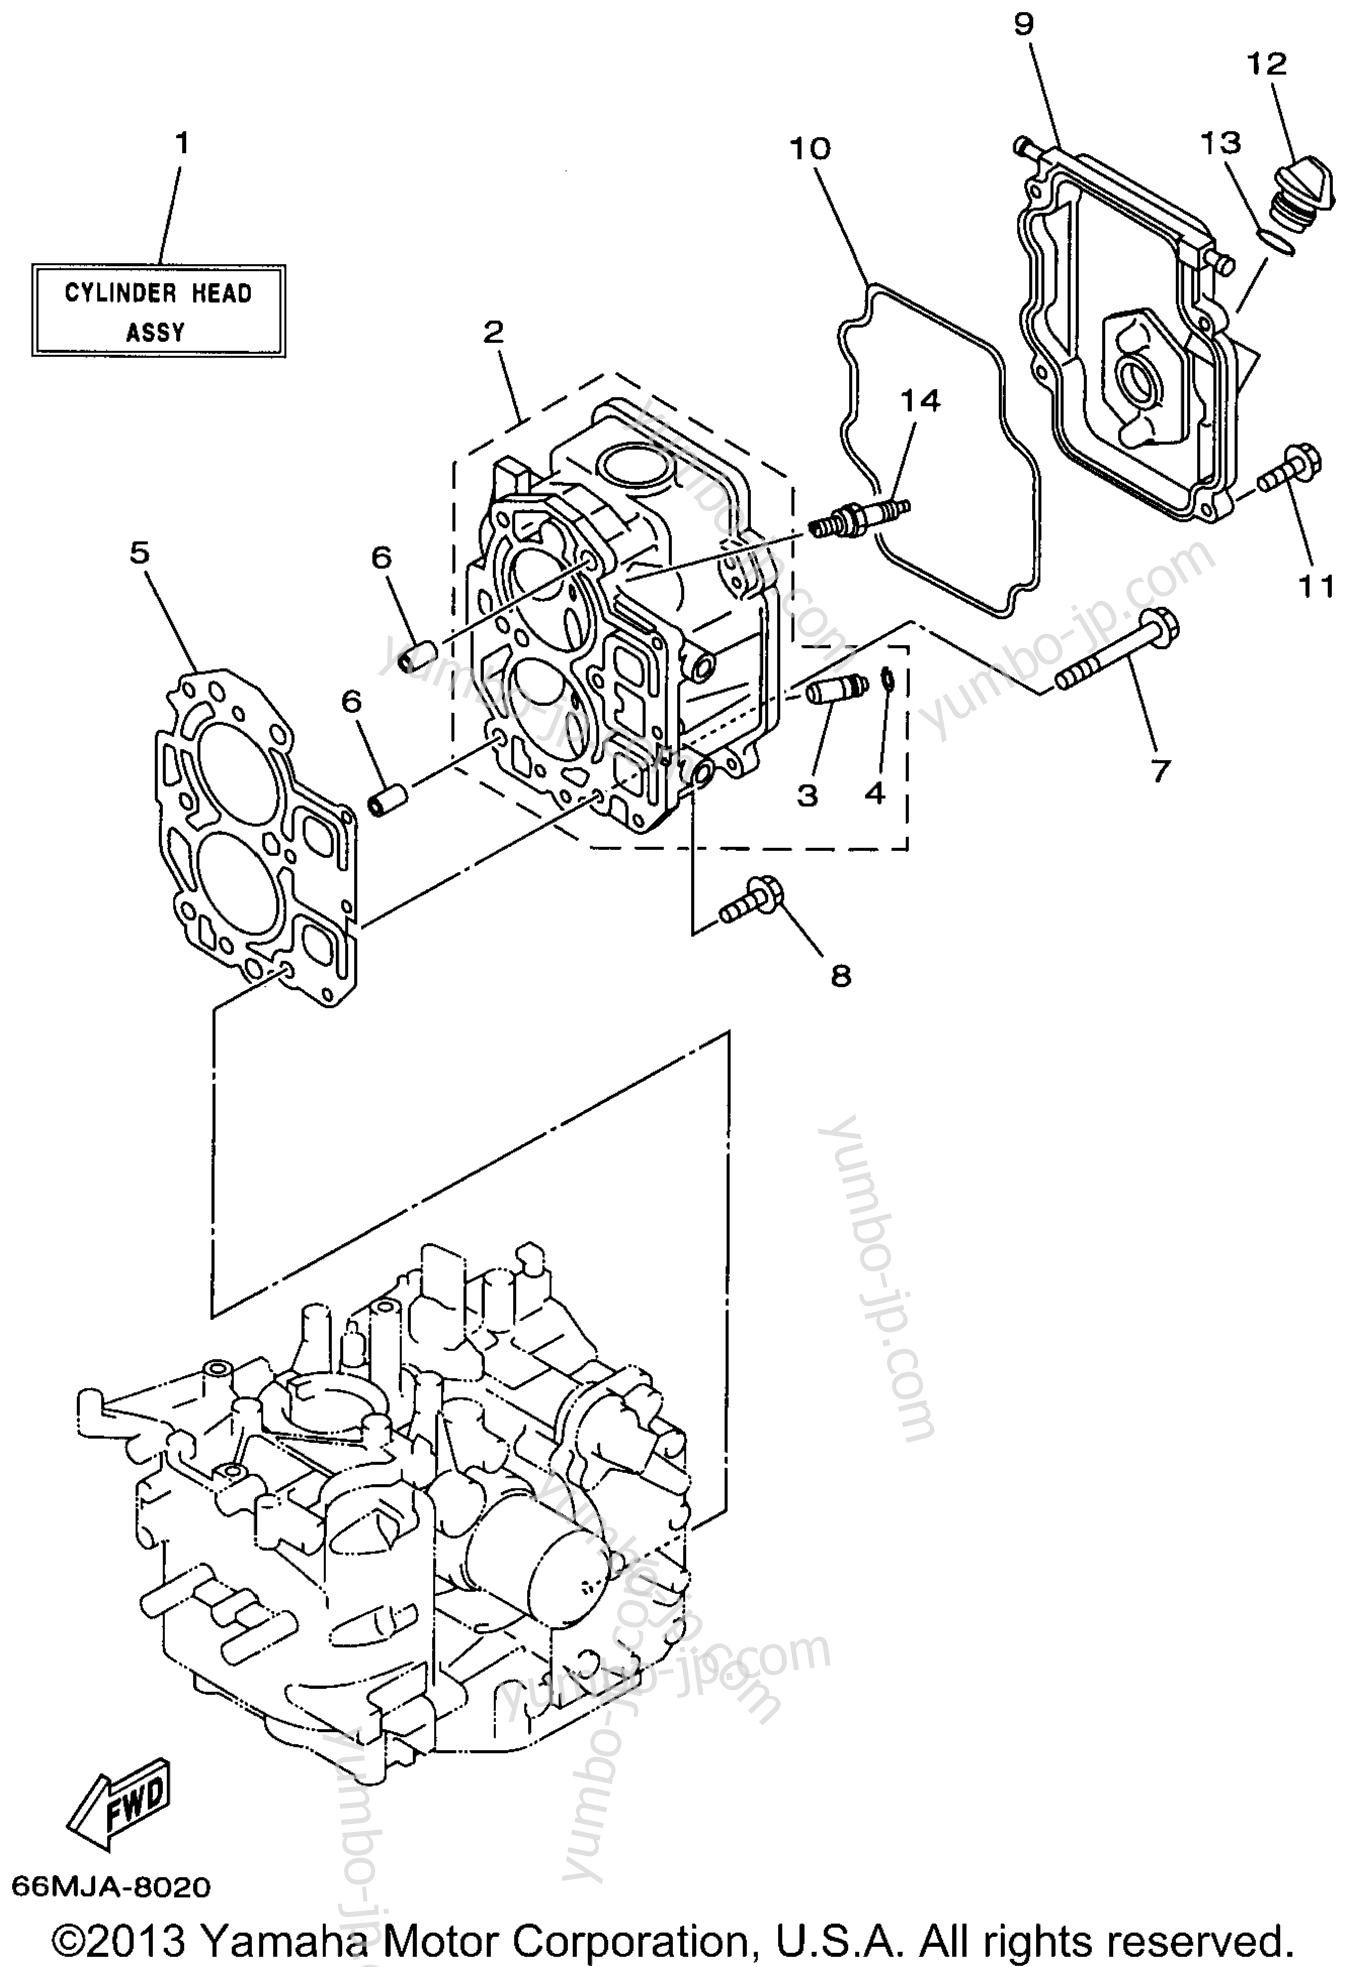 Cylinder Crankcase 2 для лодочных моторов YAMAHA F15MLHW 1998 г.